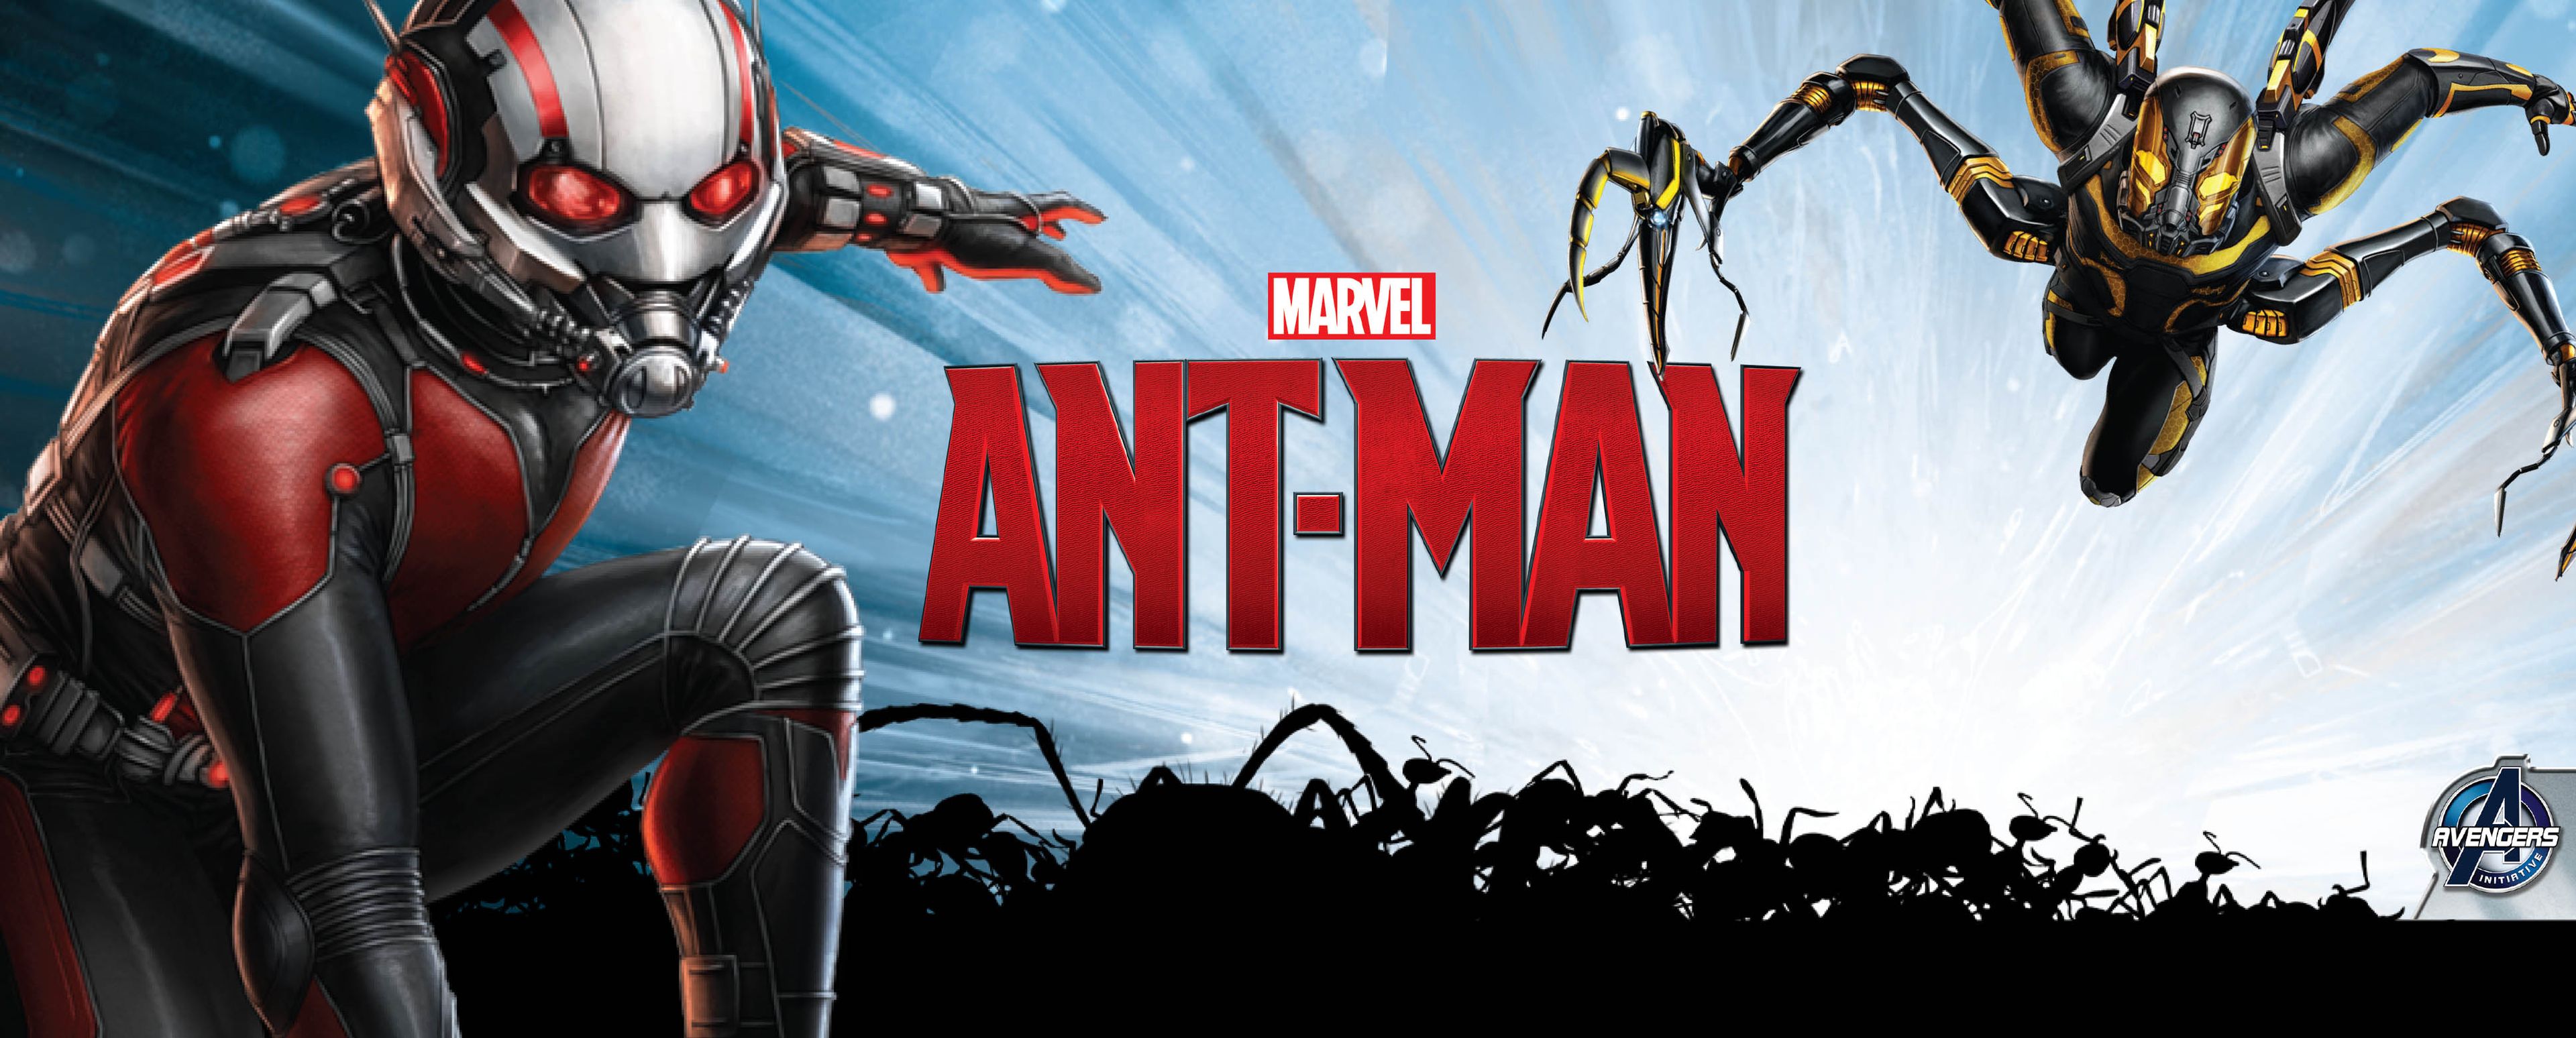 Imagen oficial de Chaqueta Amarilla, el villano de la película Ant-Man